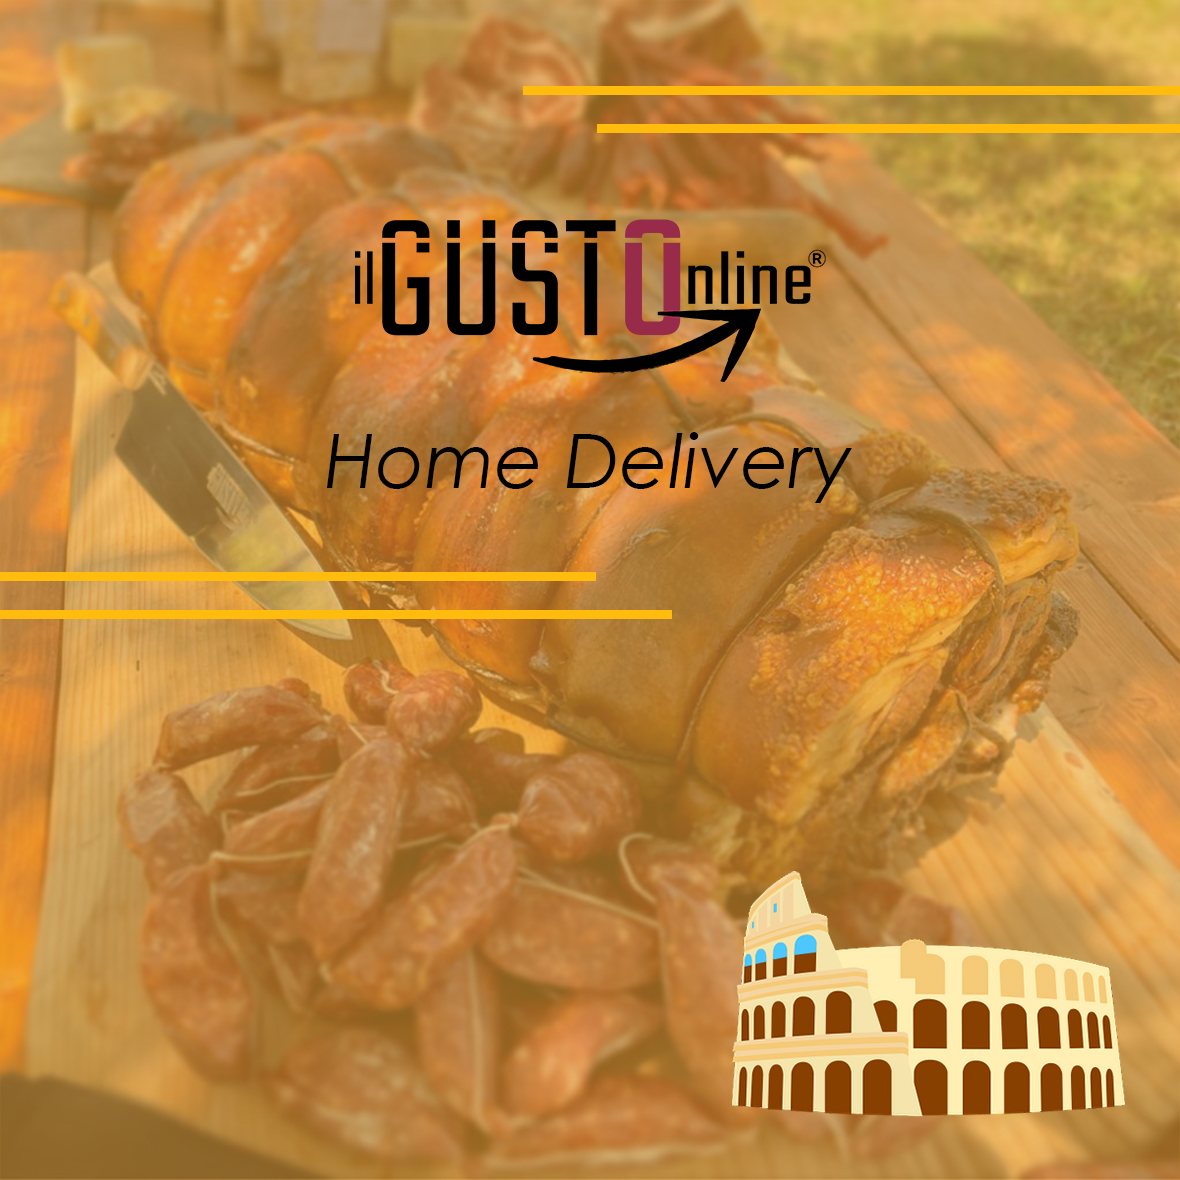 ilGusto Home Delivery - ilgustonline